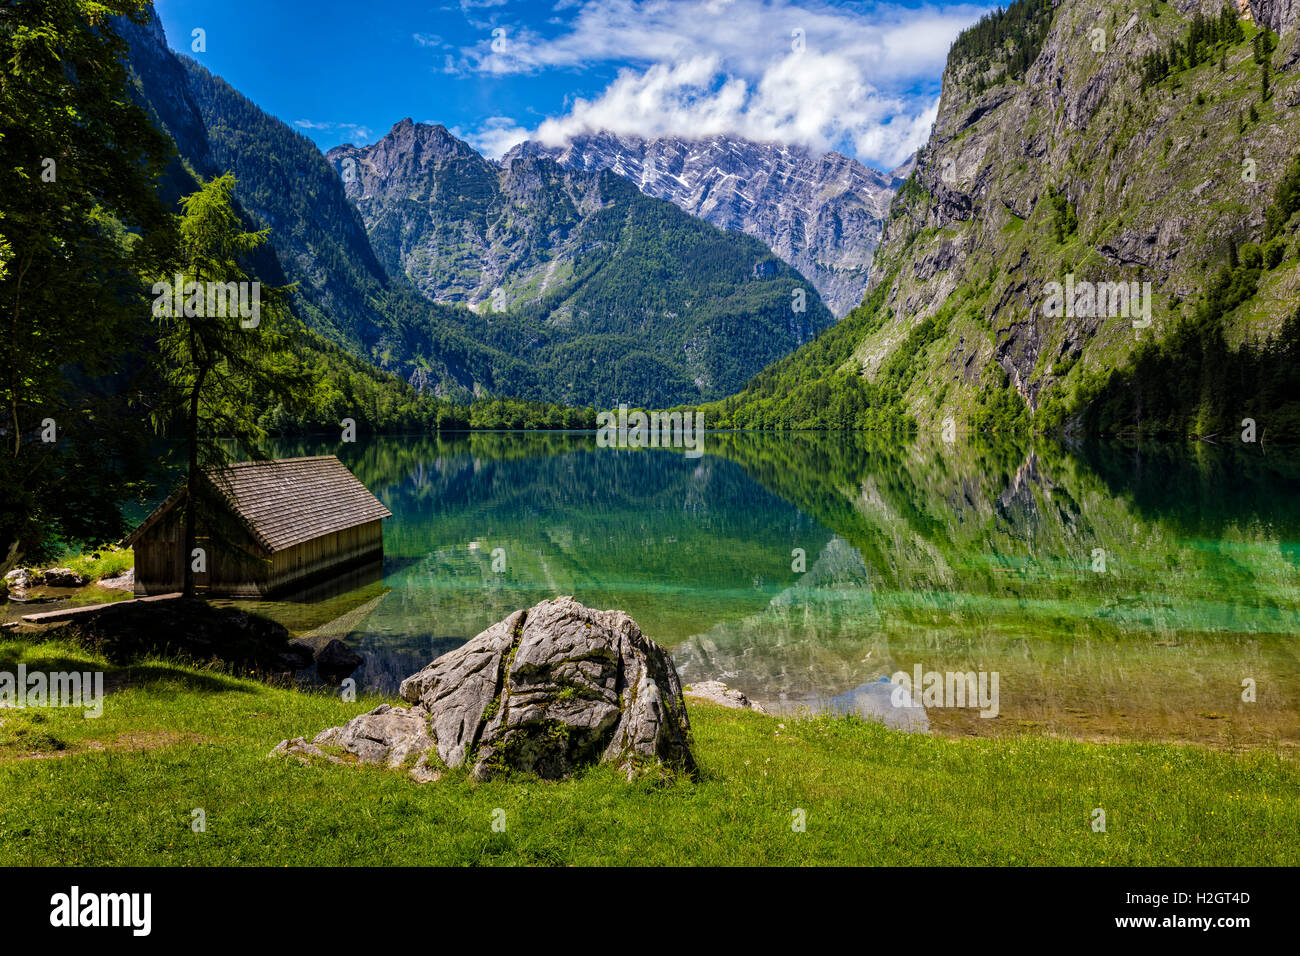 Le lac Obersee, dans le parc national de Berchtesgaden, Berlin, Allemagne Banque D'Images